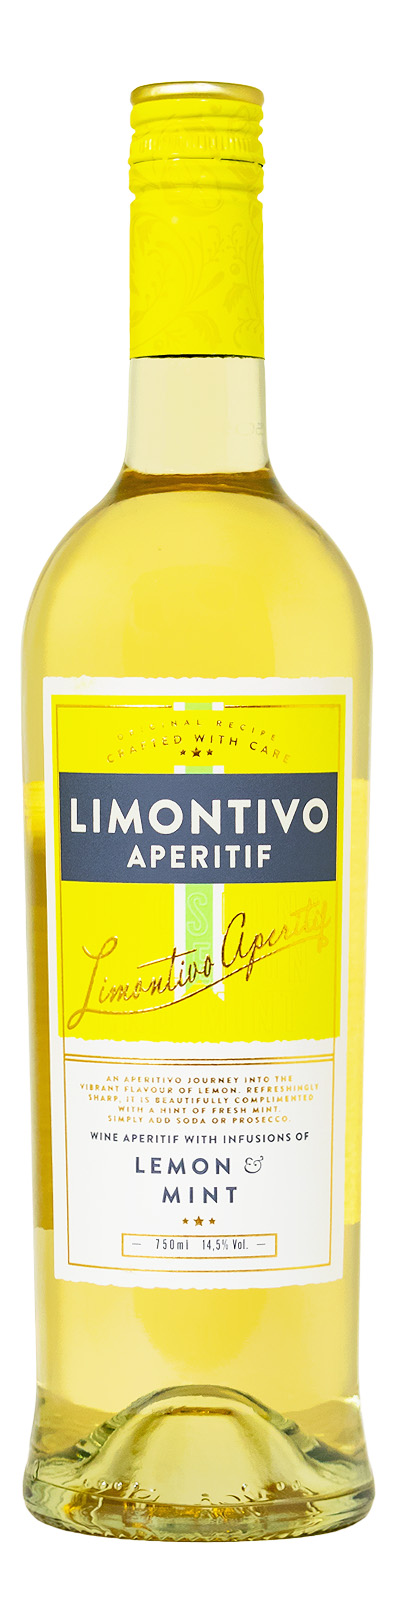 Limontivo Aperitif - 0,75L 14,5% vol